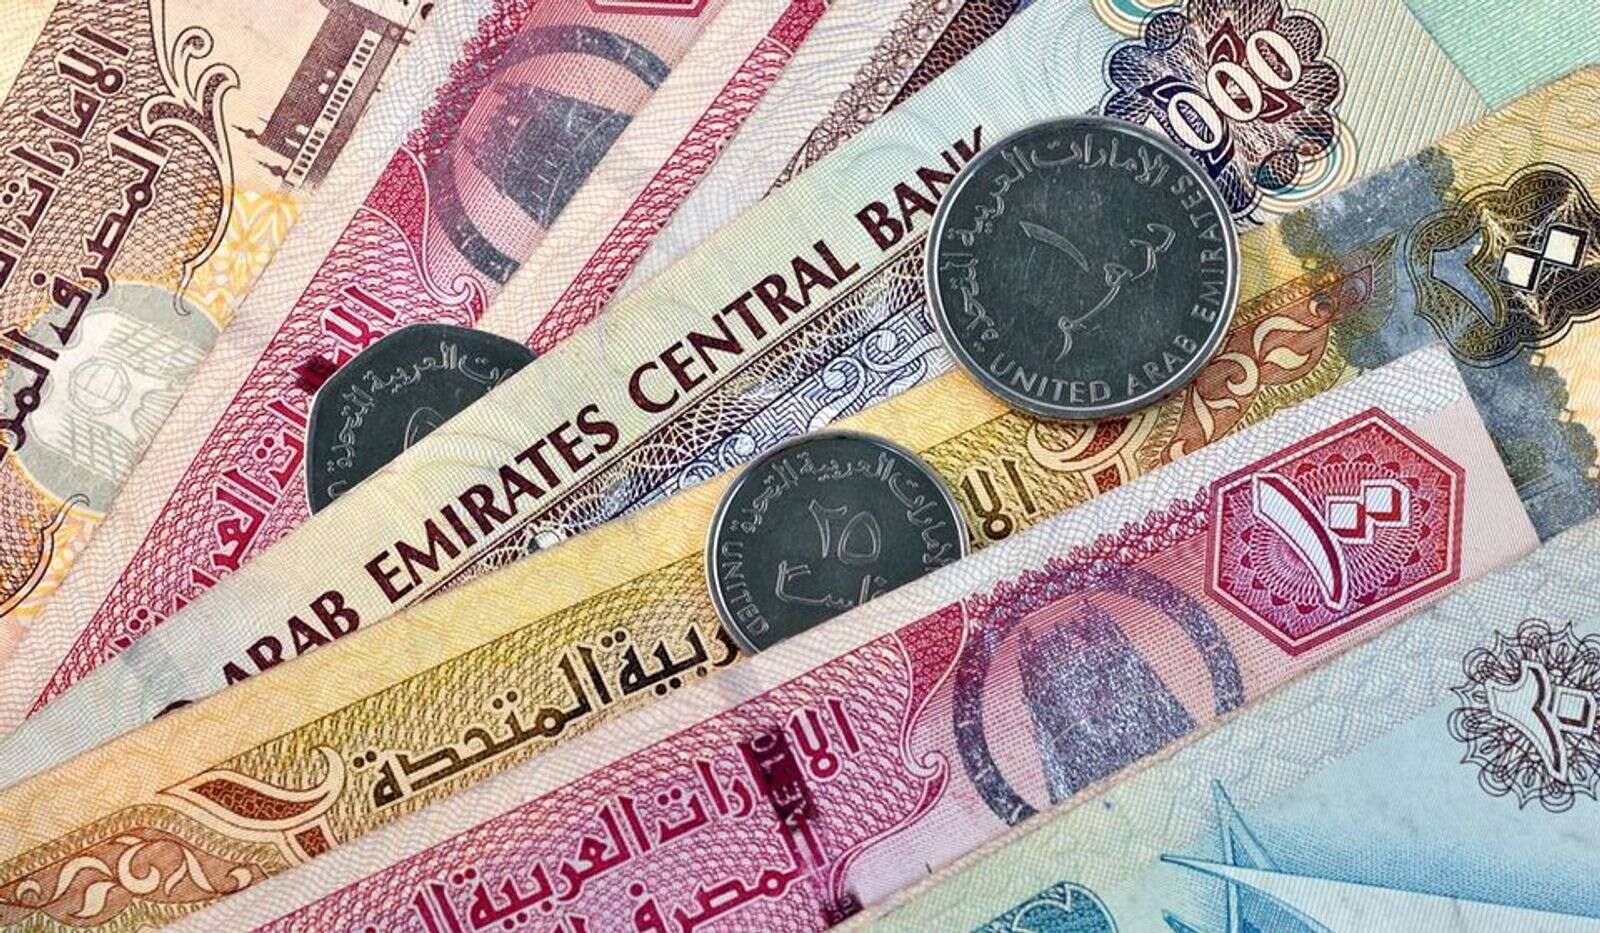 Менять доллары на дирхамы. Валюта Объединенных арабских Эмиратов. Дирхамы ОАЭ. Валюта дирхам ОАЭ. Купюры ОАЭ.